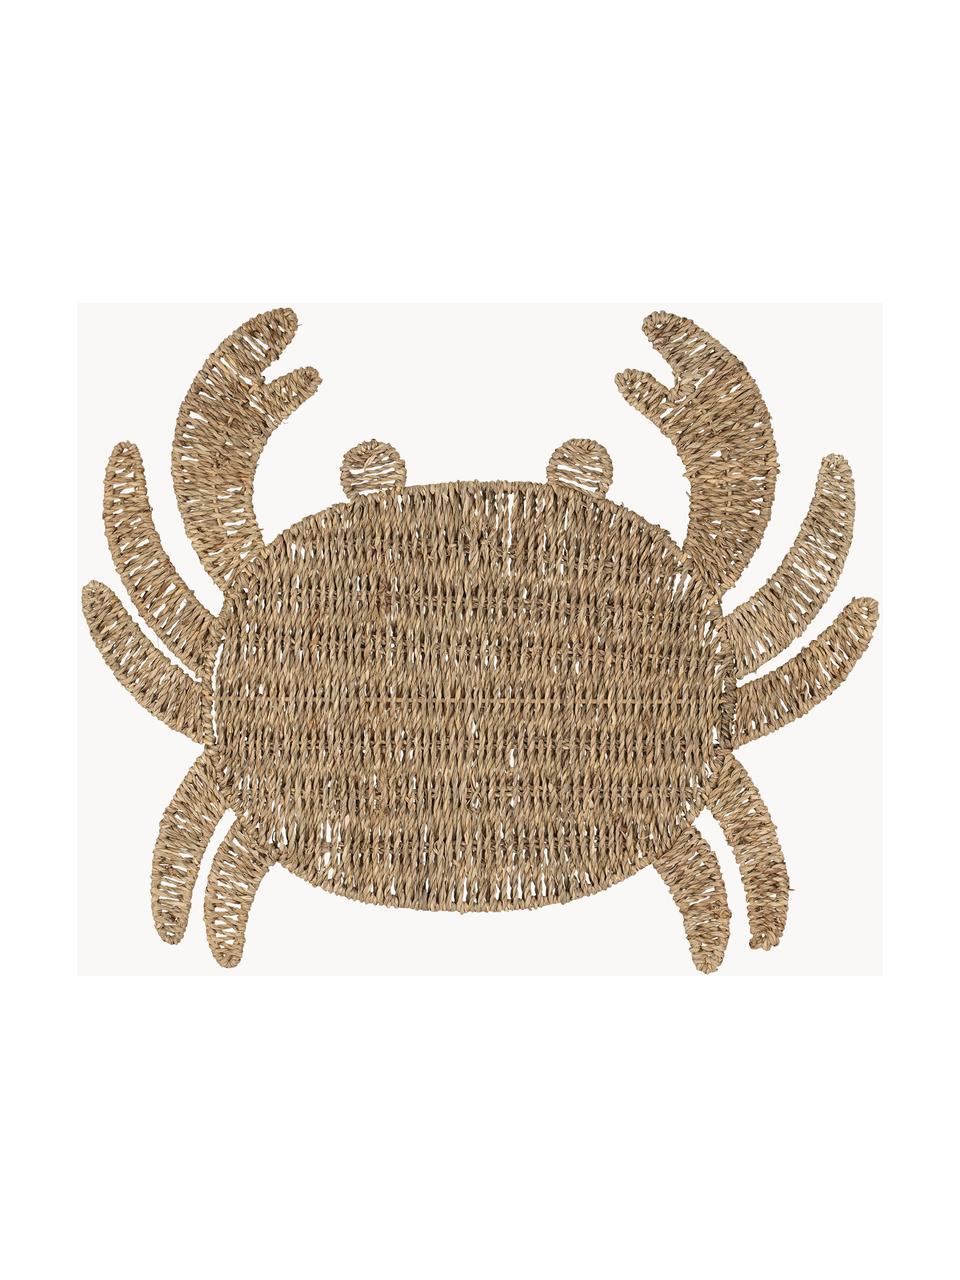 Zeegras placemat Krab in de vorm van een krab, Zeegras, Beige, B 38 x L 48 cm